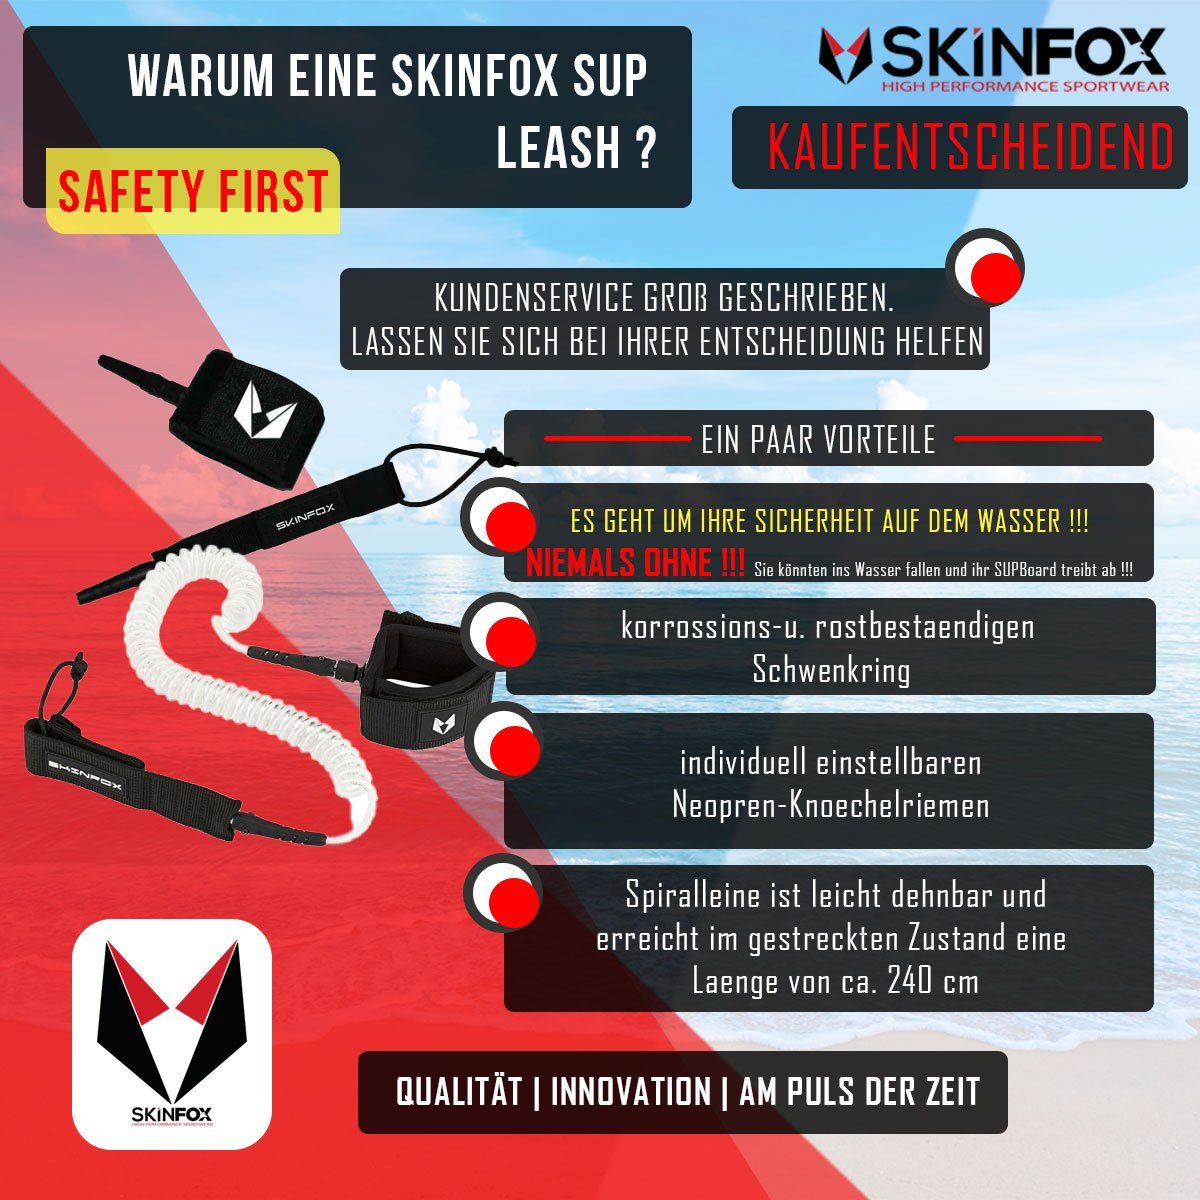 Skinfox SUP-Leash SKINFOX Leash Stand Leine Coiled Paddle und Fussleine Surfboard Up für Board SUP